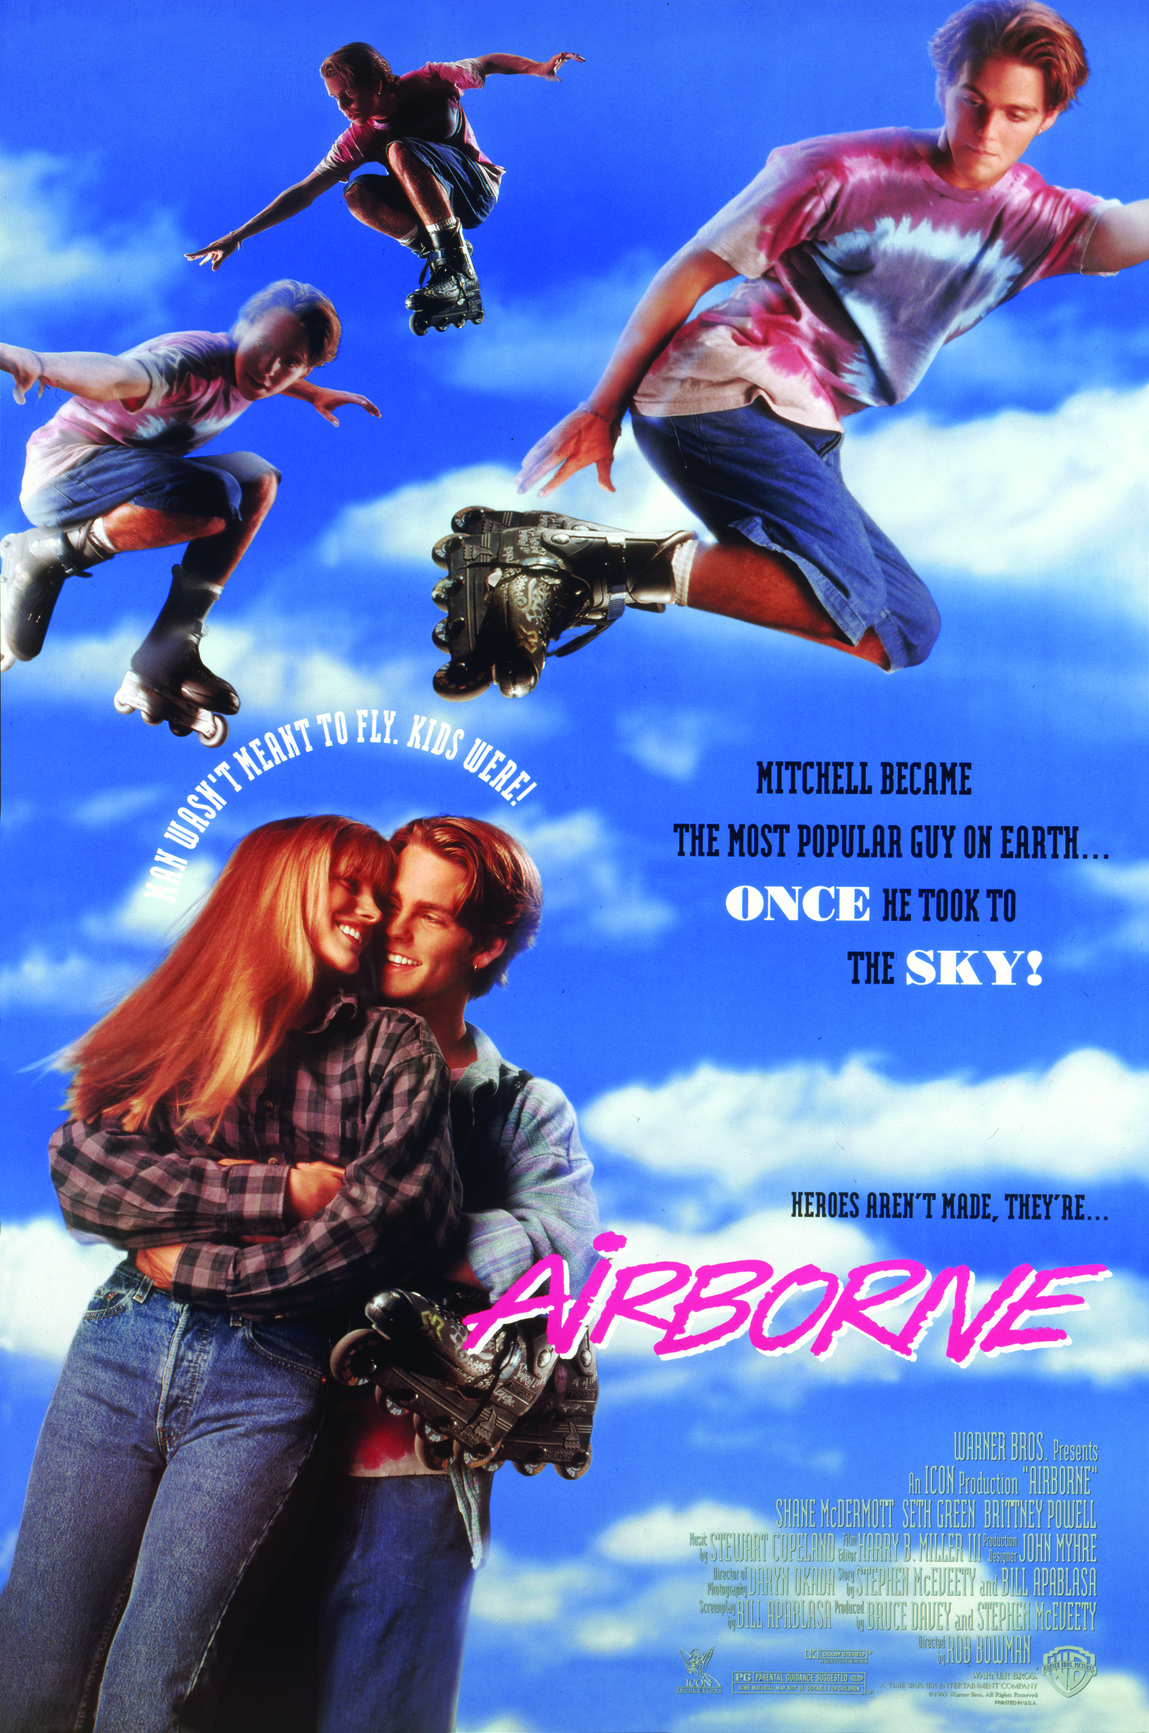 Airborne 